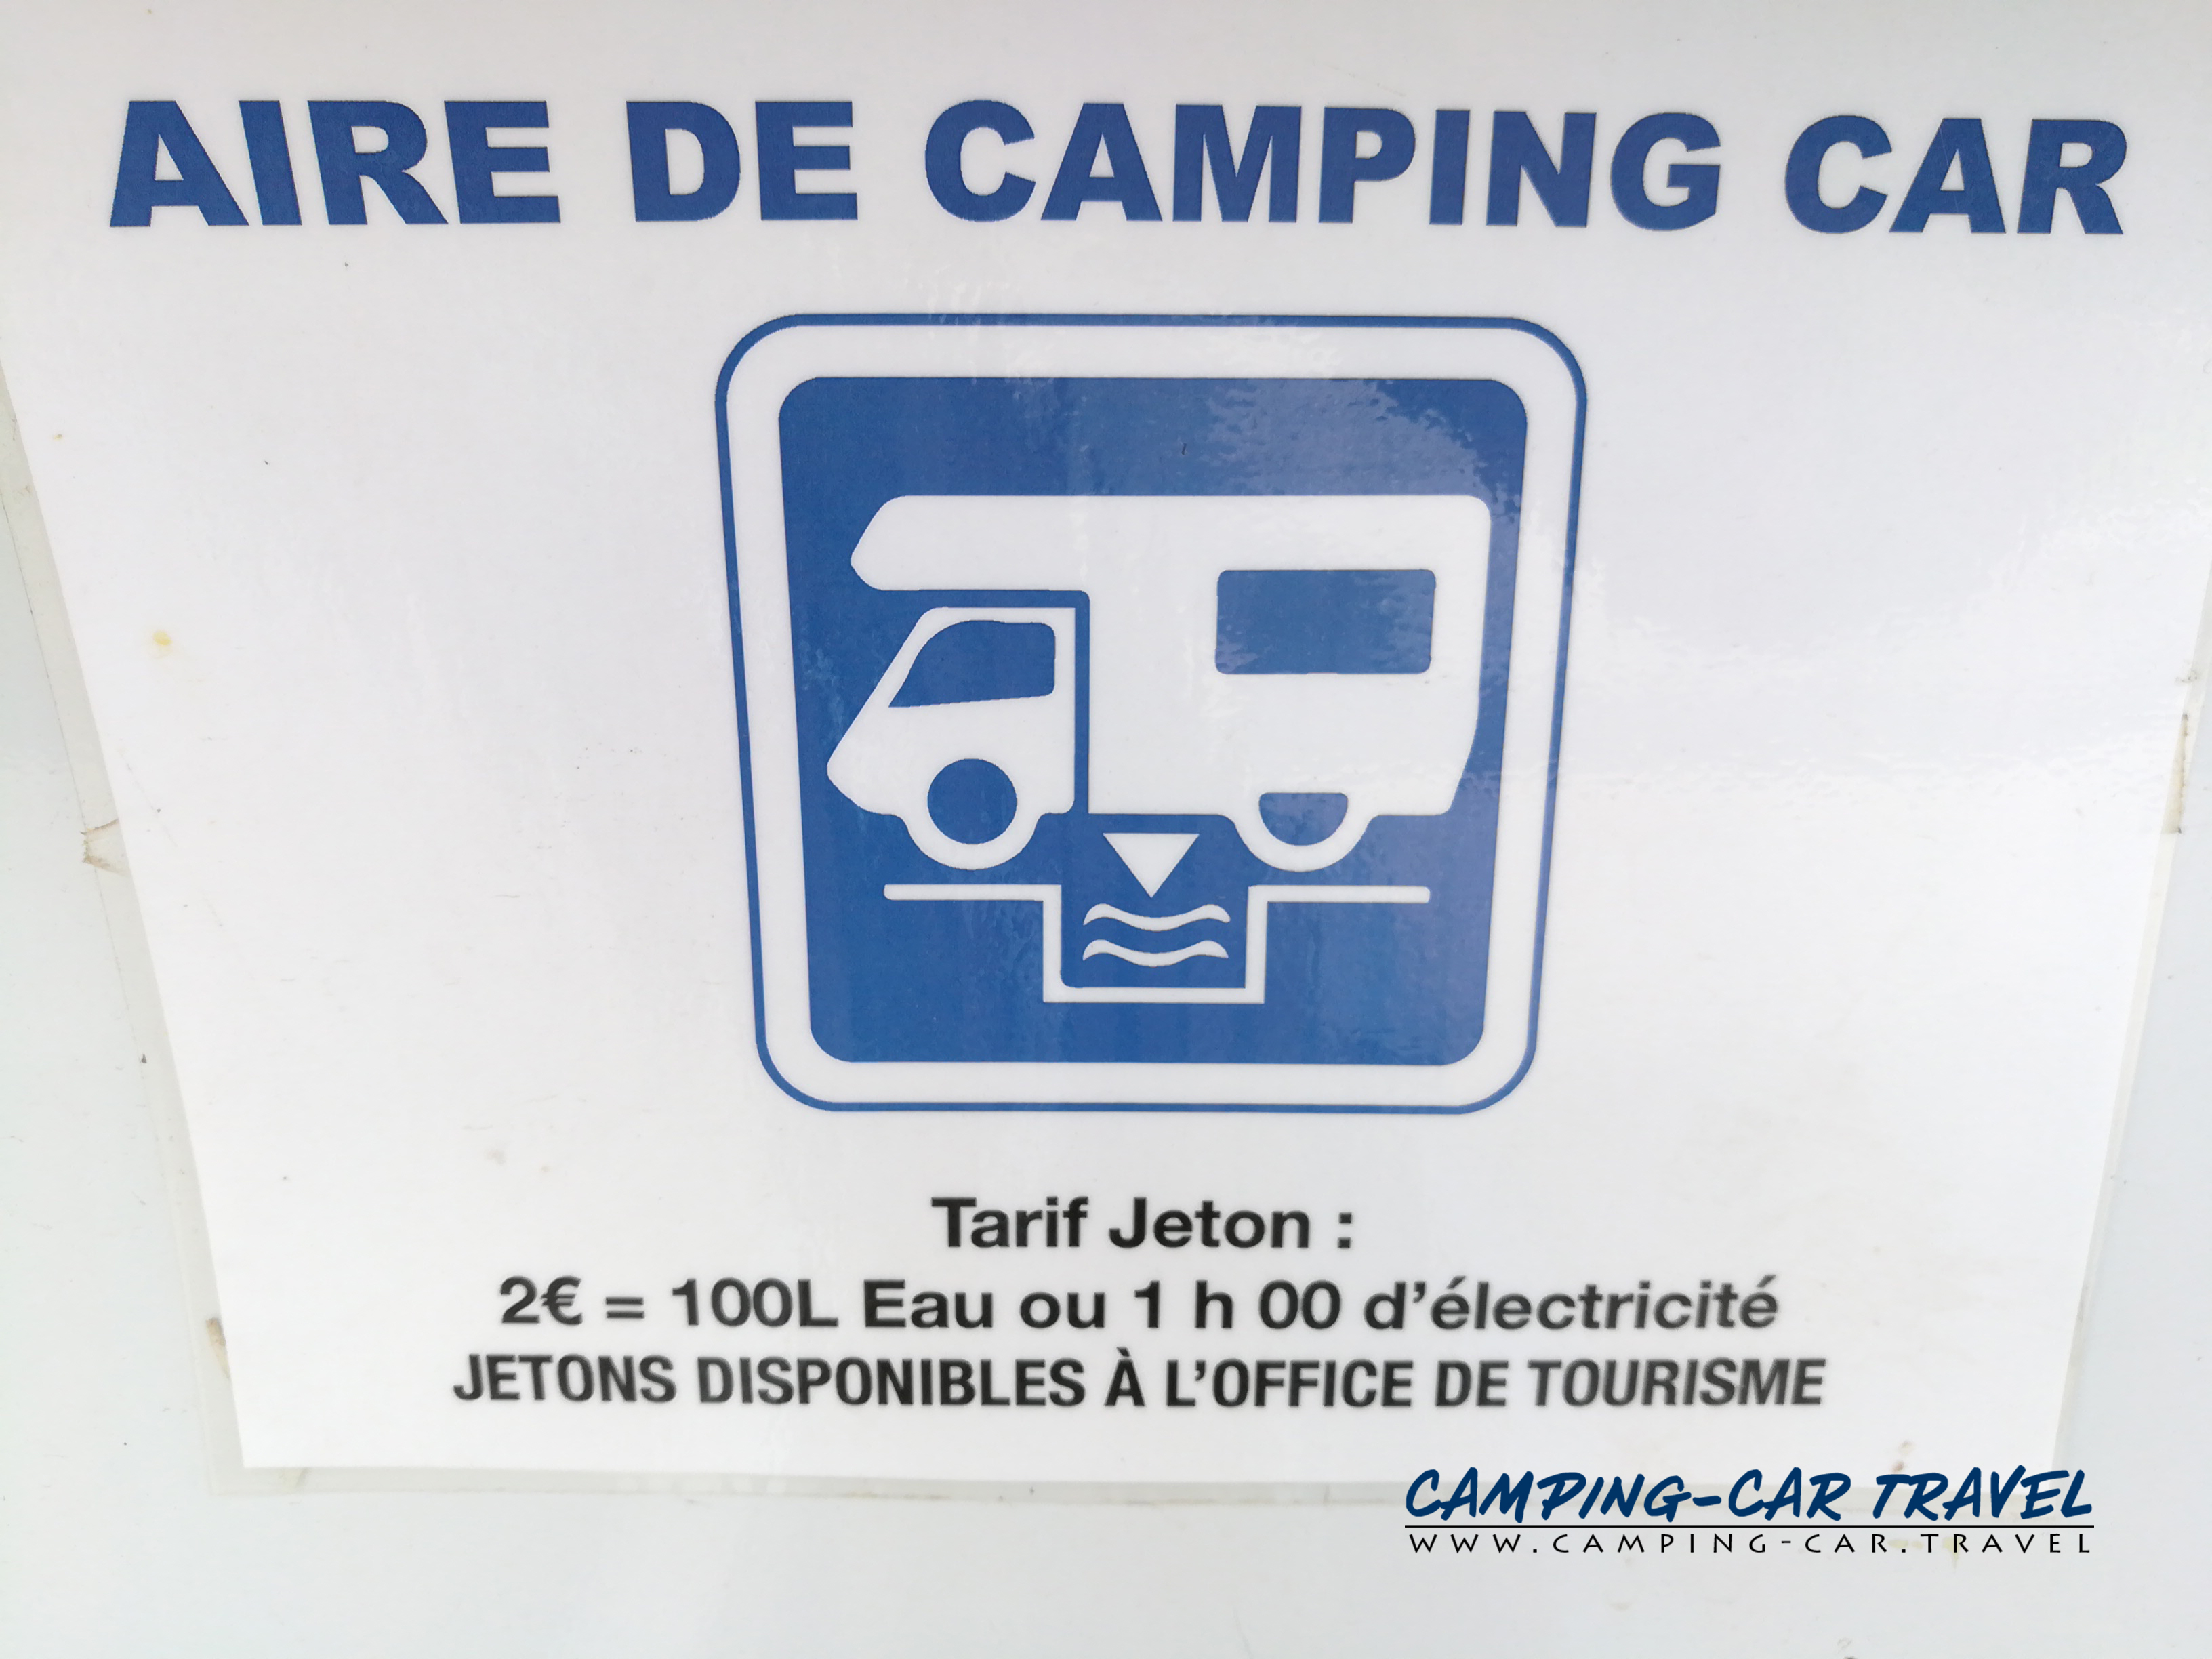 aire services camping car Ventron Vosges